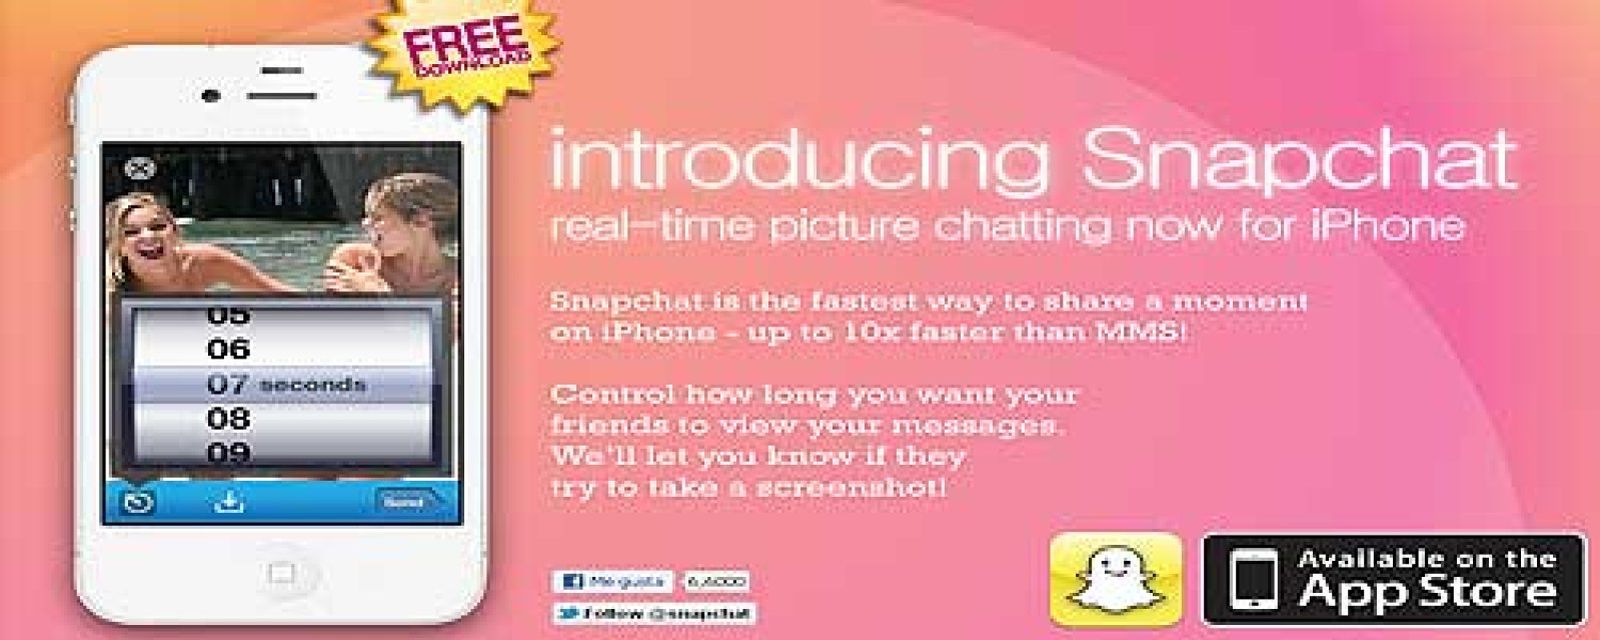 Foto: Snapchat, una aplicación para enviar fotografías que se autodestruyen